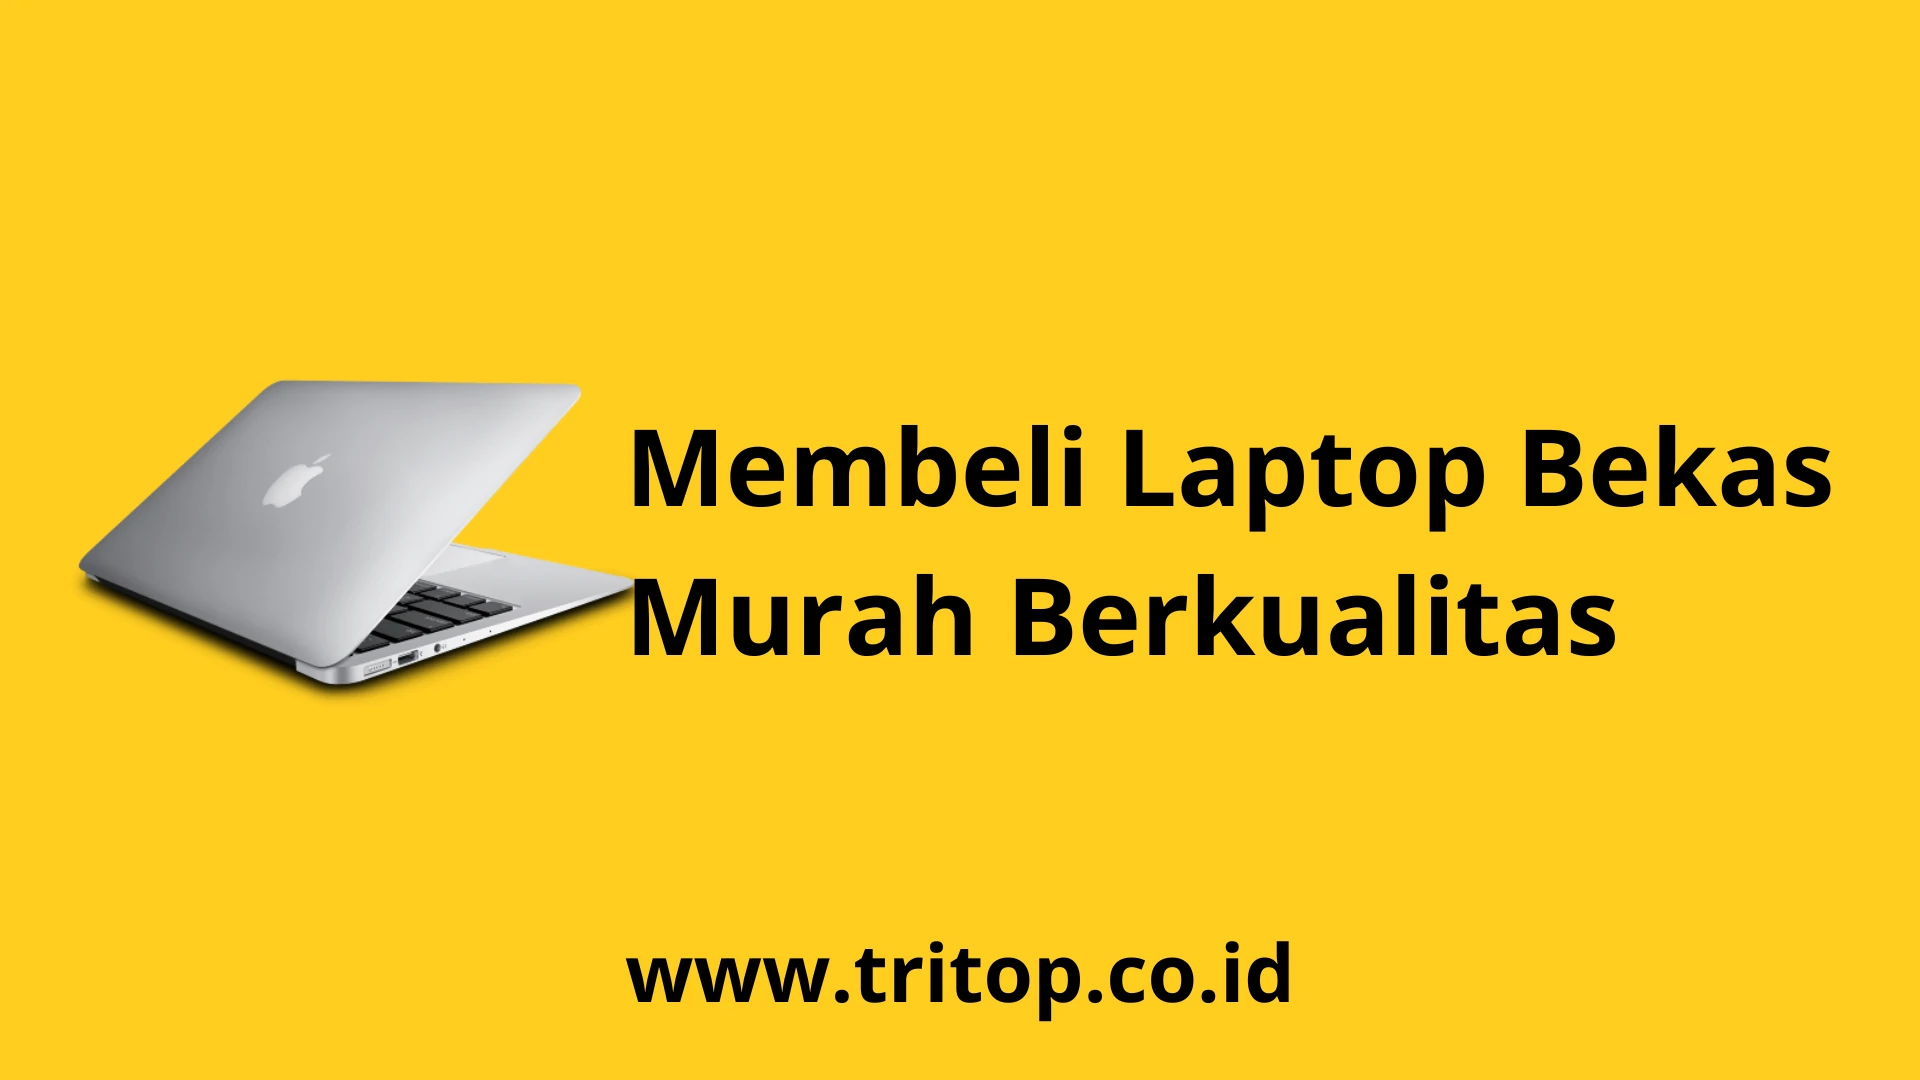 Laptop Bekas Murah Berkualitas Tritop.co.id